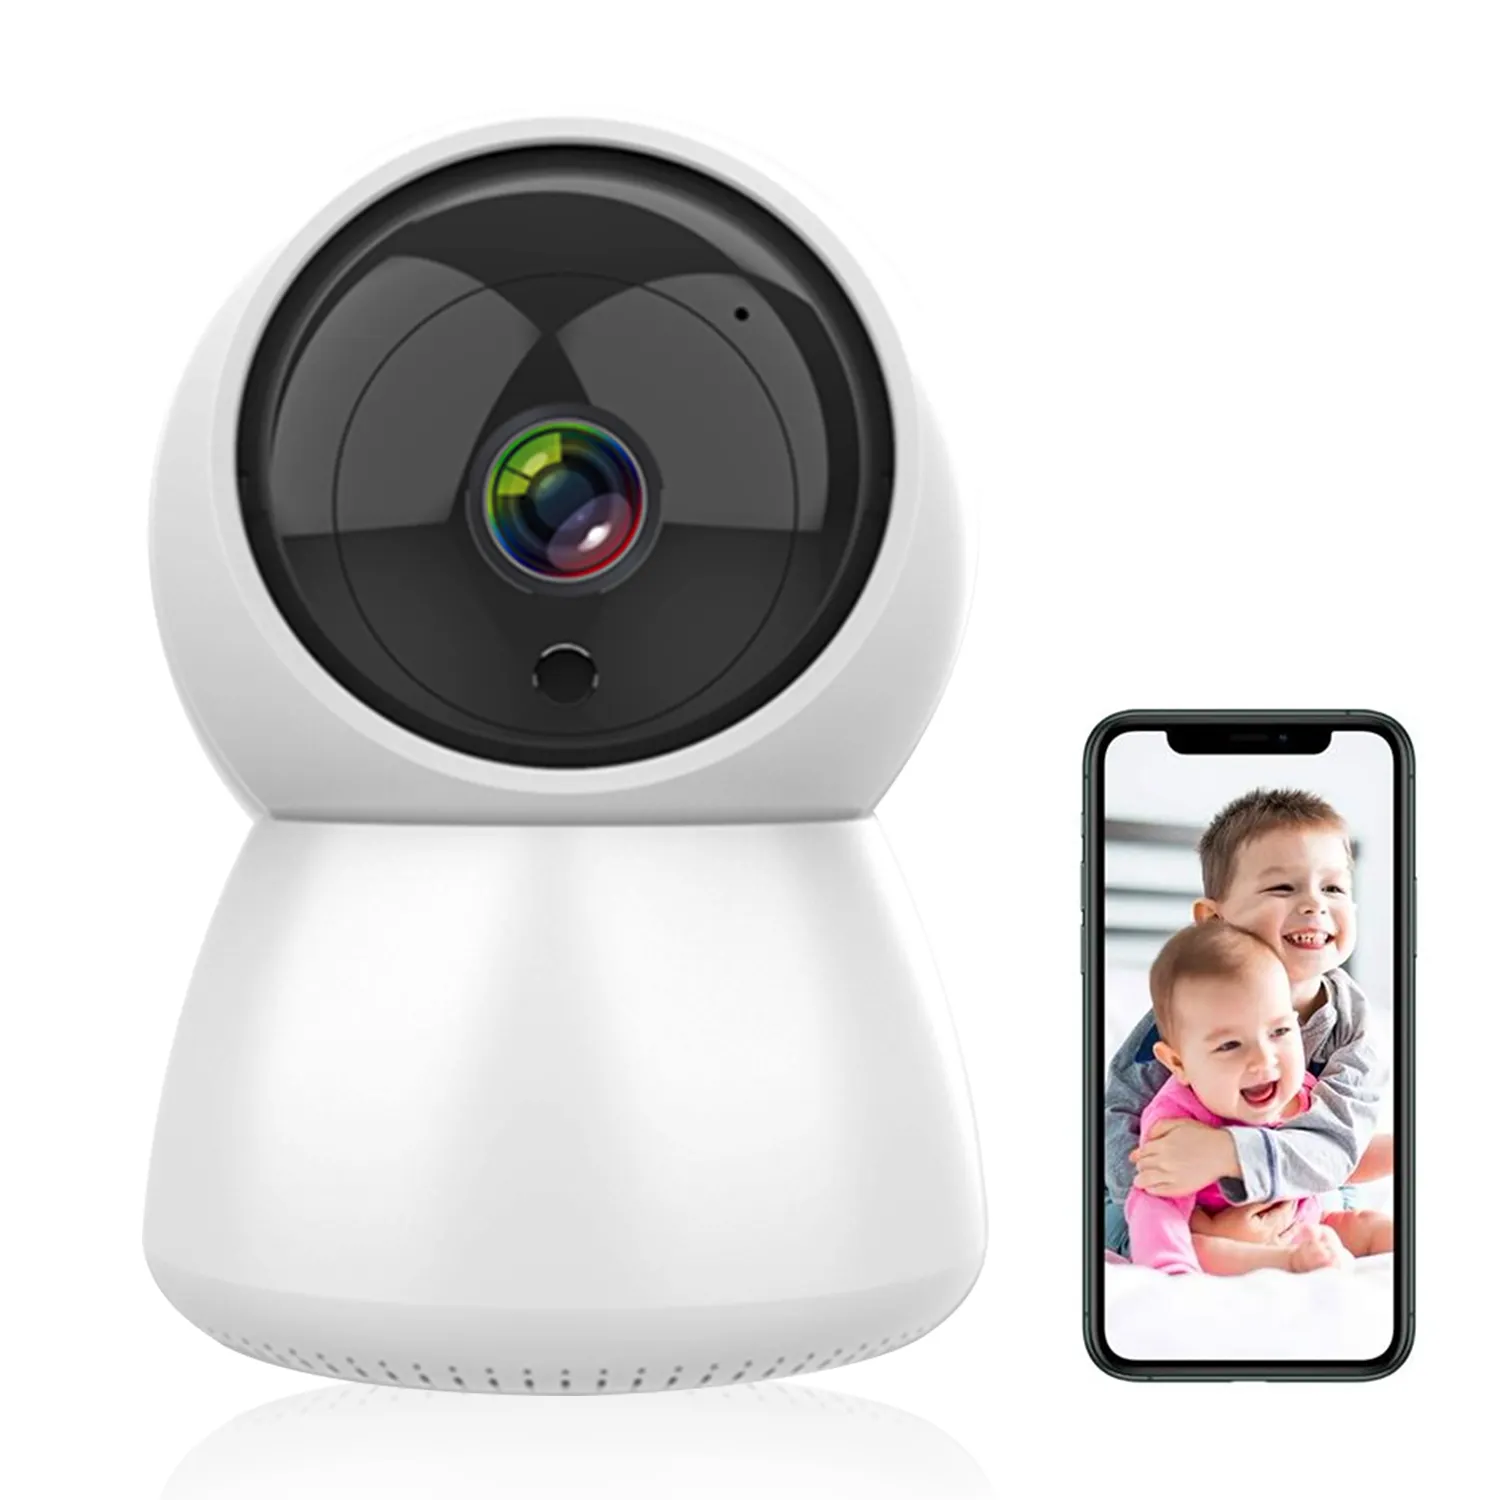 Bulut 1080P PTZ IP kamera otomatik izleme 2MP ev güvenlik sistemi güvenlik kamerası ağ WiFi IP kamera kablosuz kamerası bebek izleme monitörü